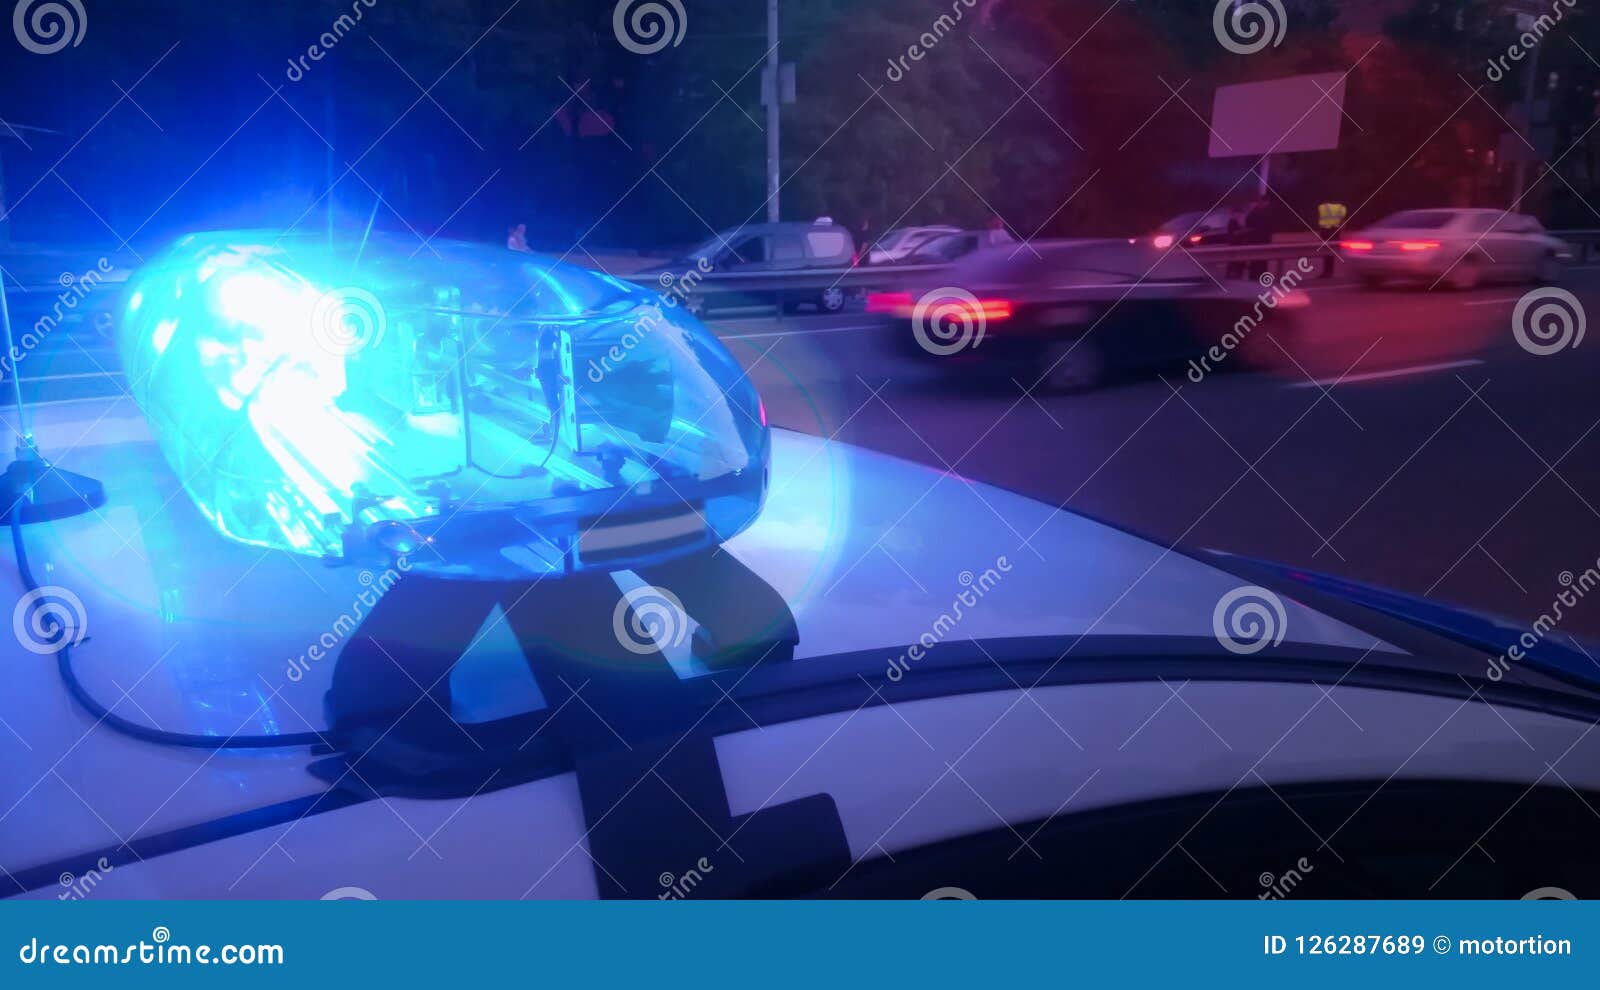 Flasher Luz Azul En Lo Alto De Un Coche De Policía. Luces De La Ciudad En  El Fondo. Fotos, retratos, imágenes y fotografía de archivo libres de  derecho. Image 42311786